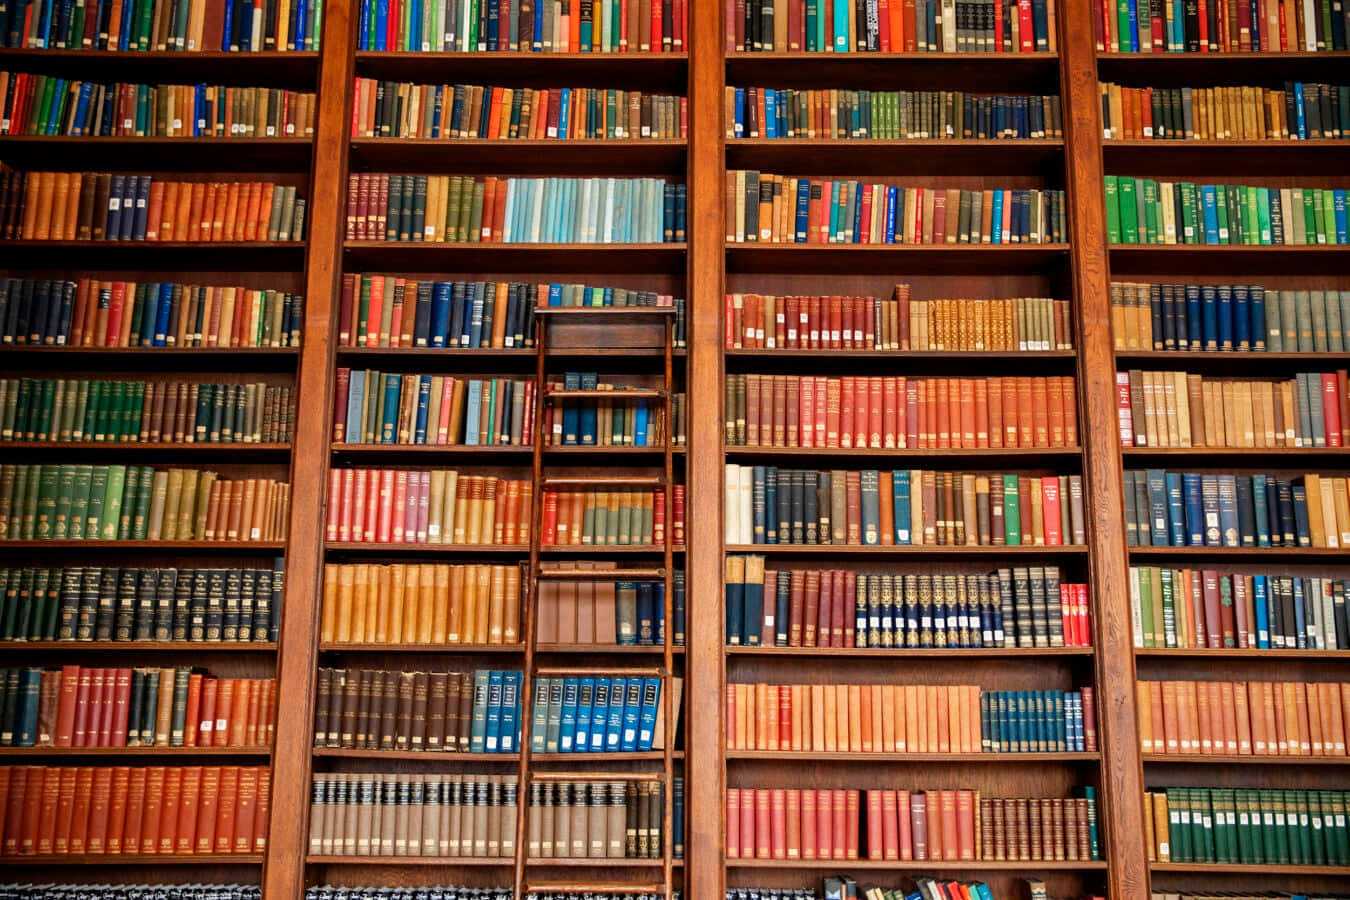 Unabiblioteca Con Muchos Libros En Estantes